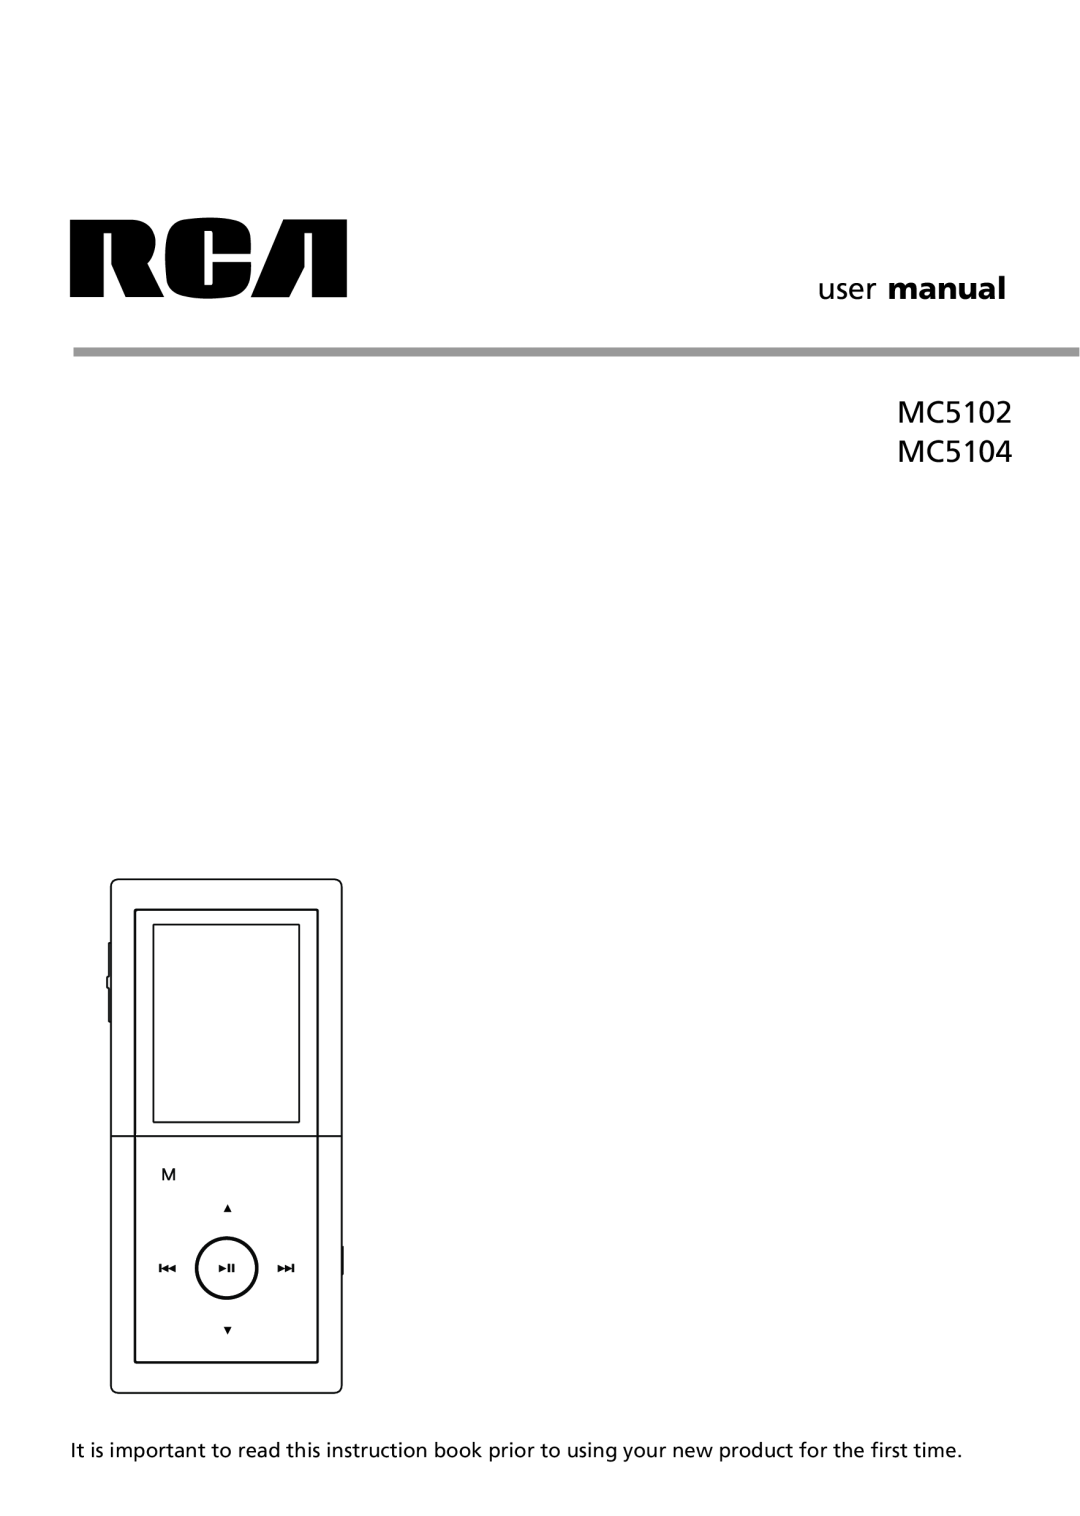 RCA user manual MC5102 MC5104 